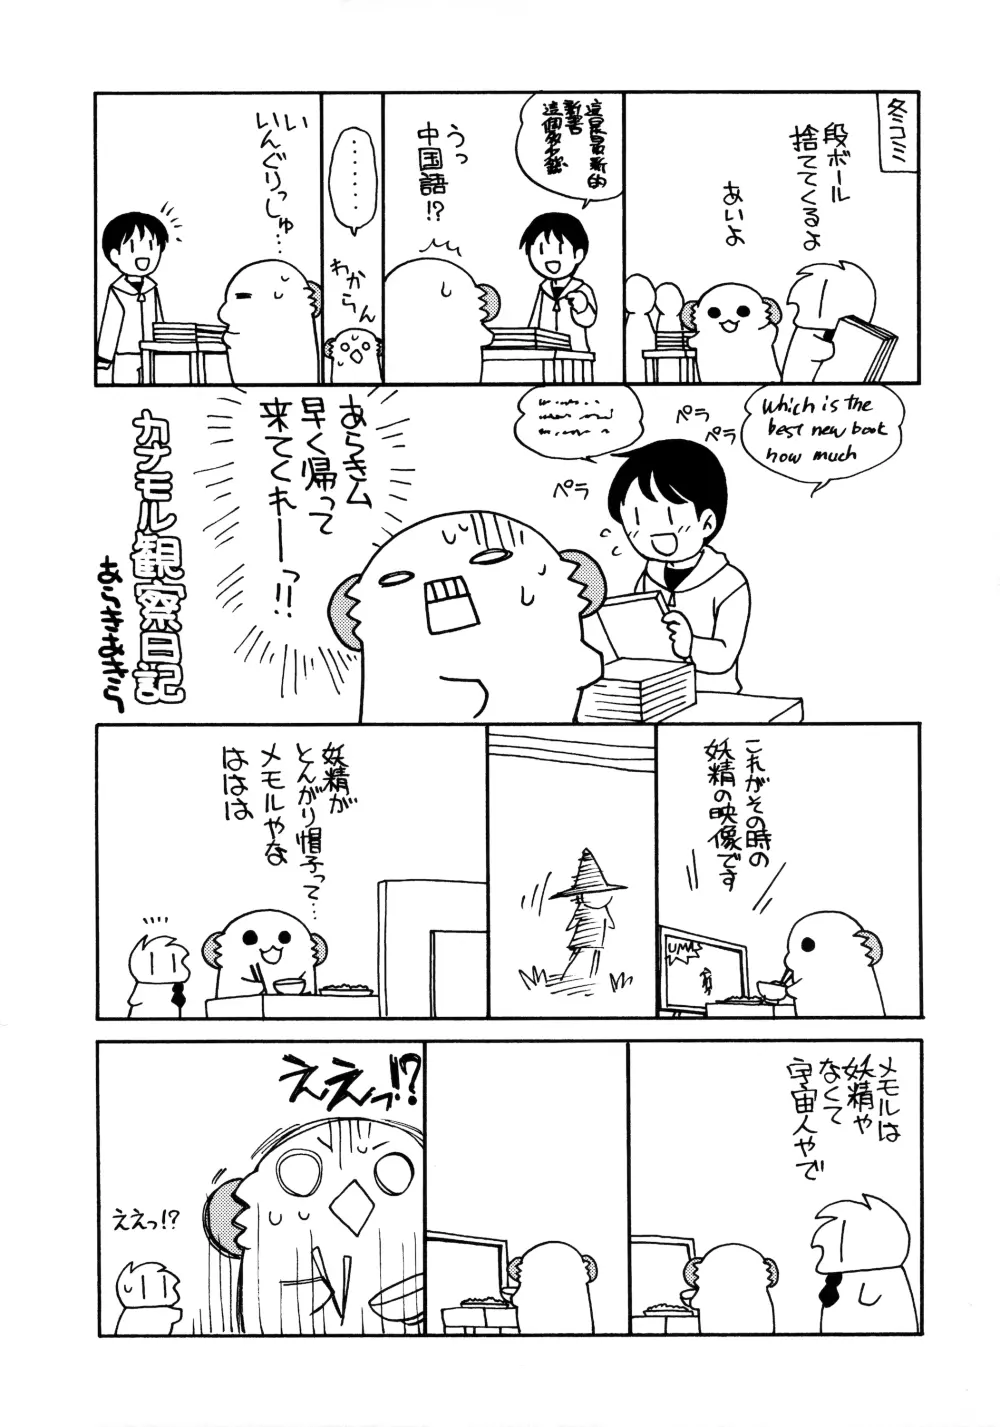 鹿島ちゃんの練習戦線異常アリ2 - page20